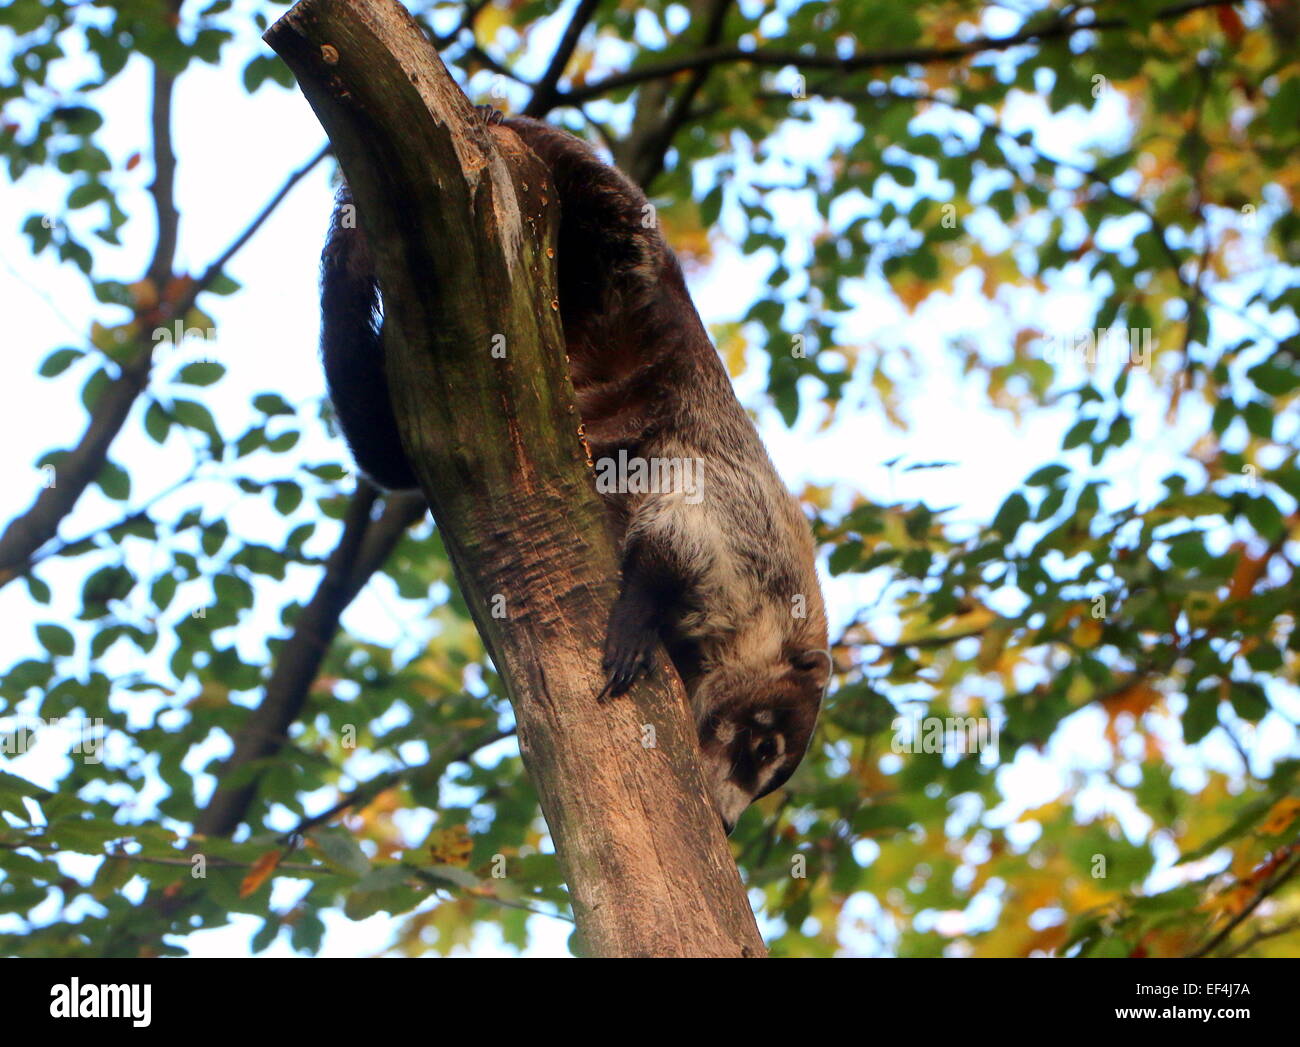 Central American White-nosed coati or coatimundi (Nasua narica) descending down a tree Stock Photo